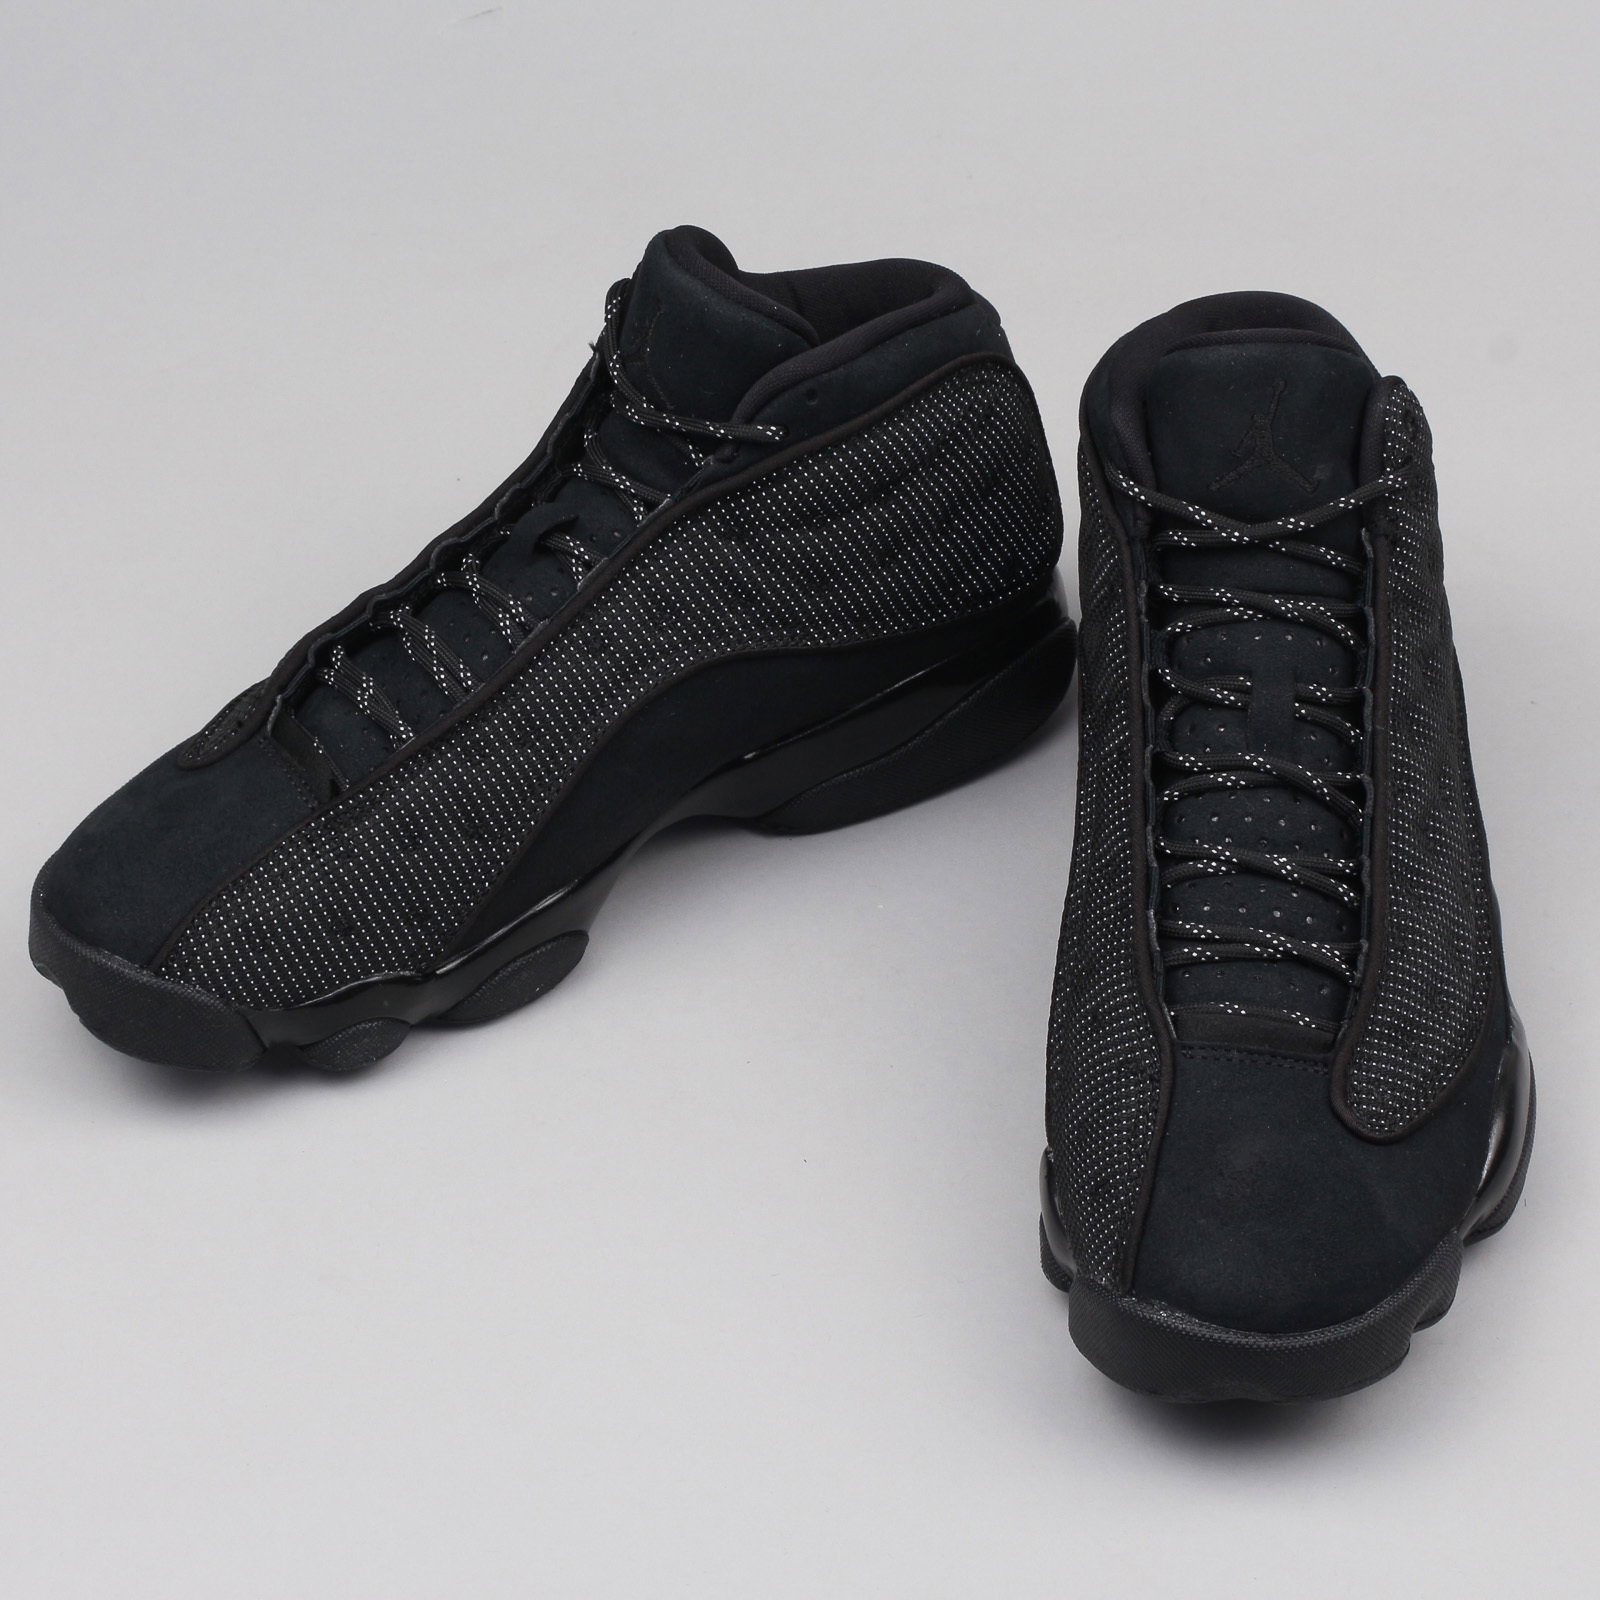 Air Jordan 13 Retro Black Cat sneakers